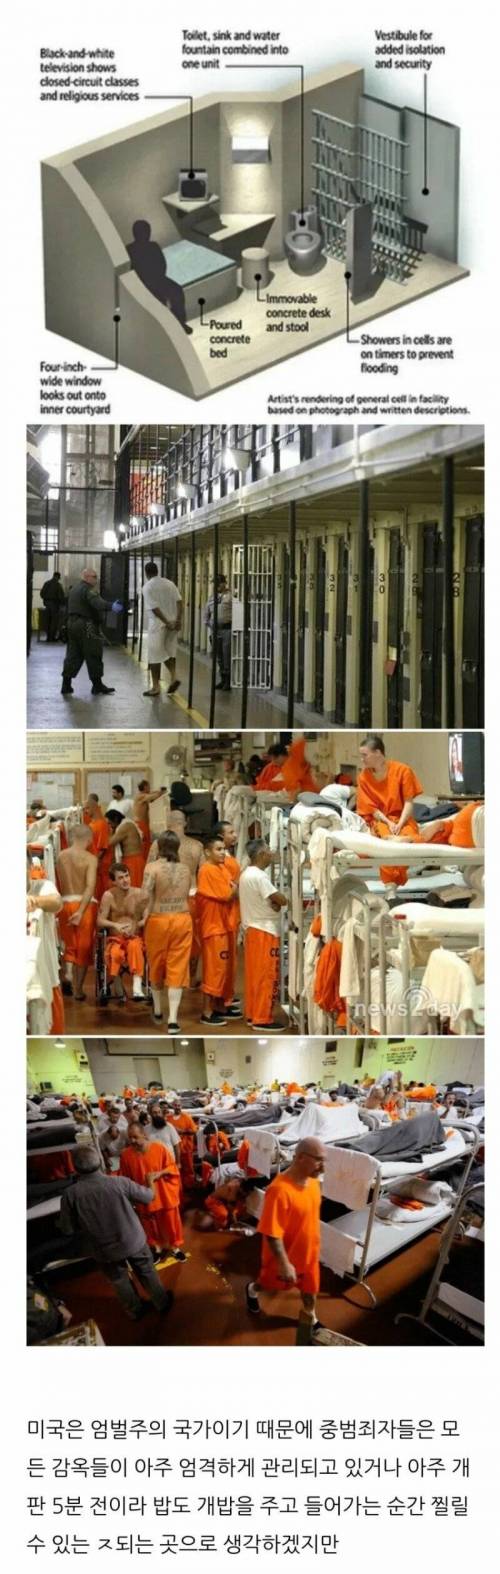 미국 감옥의 충격적인 진실 .jpg